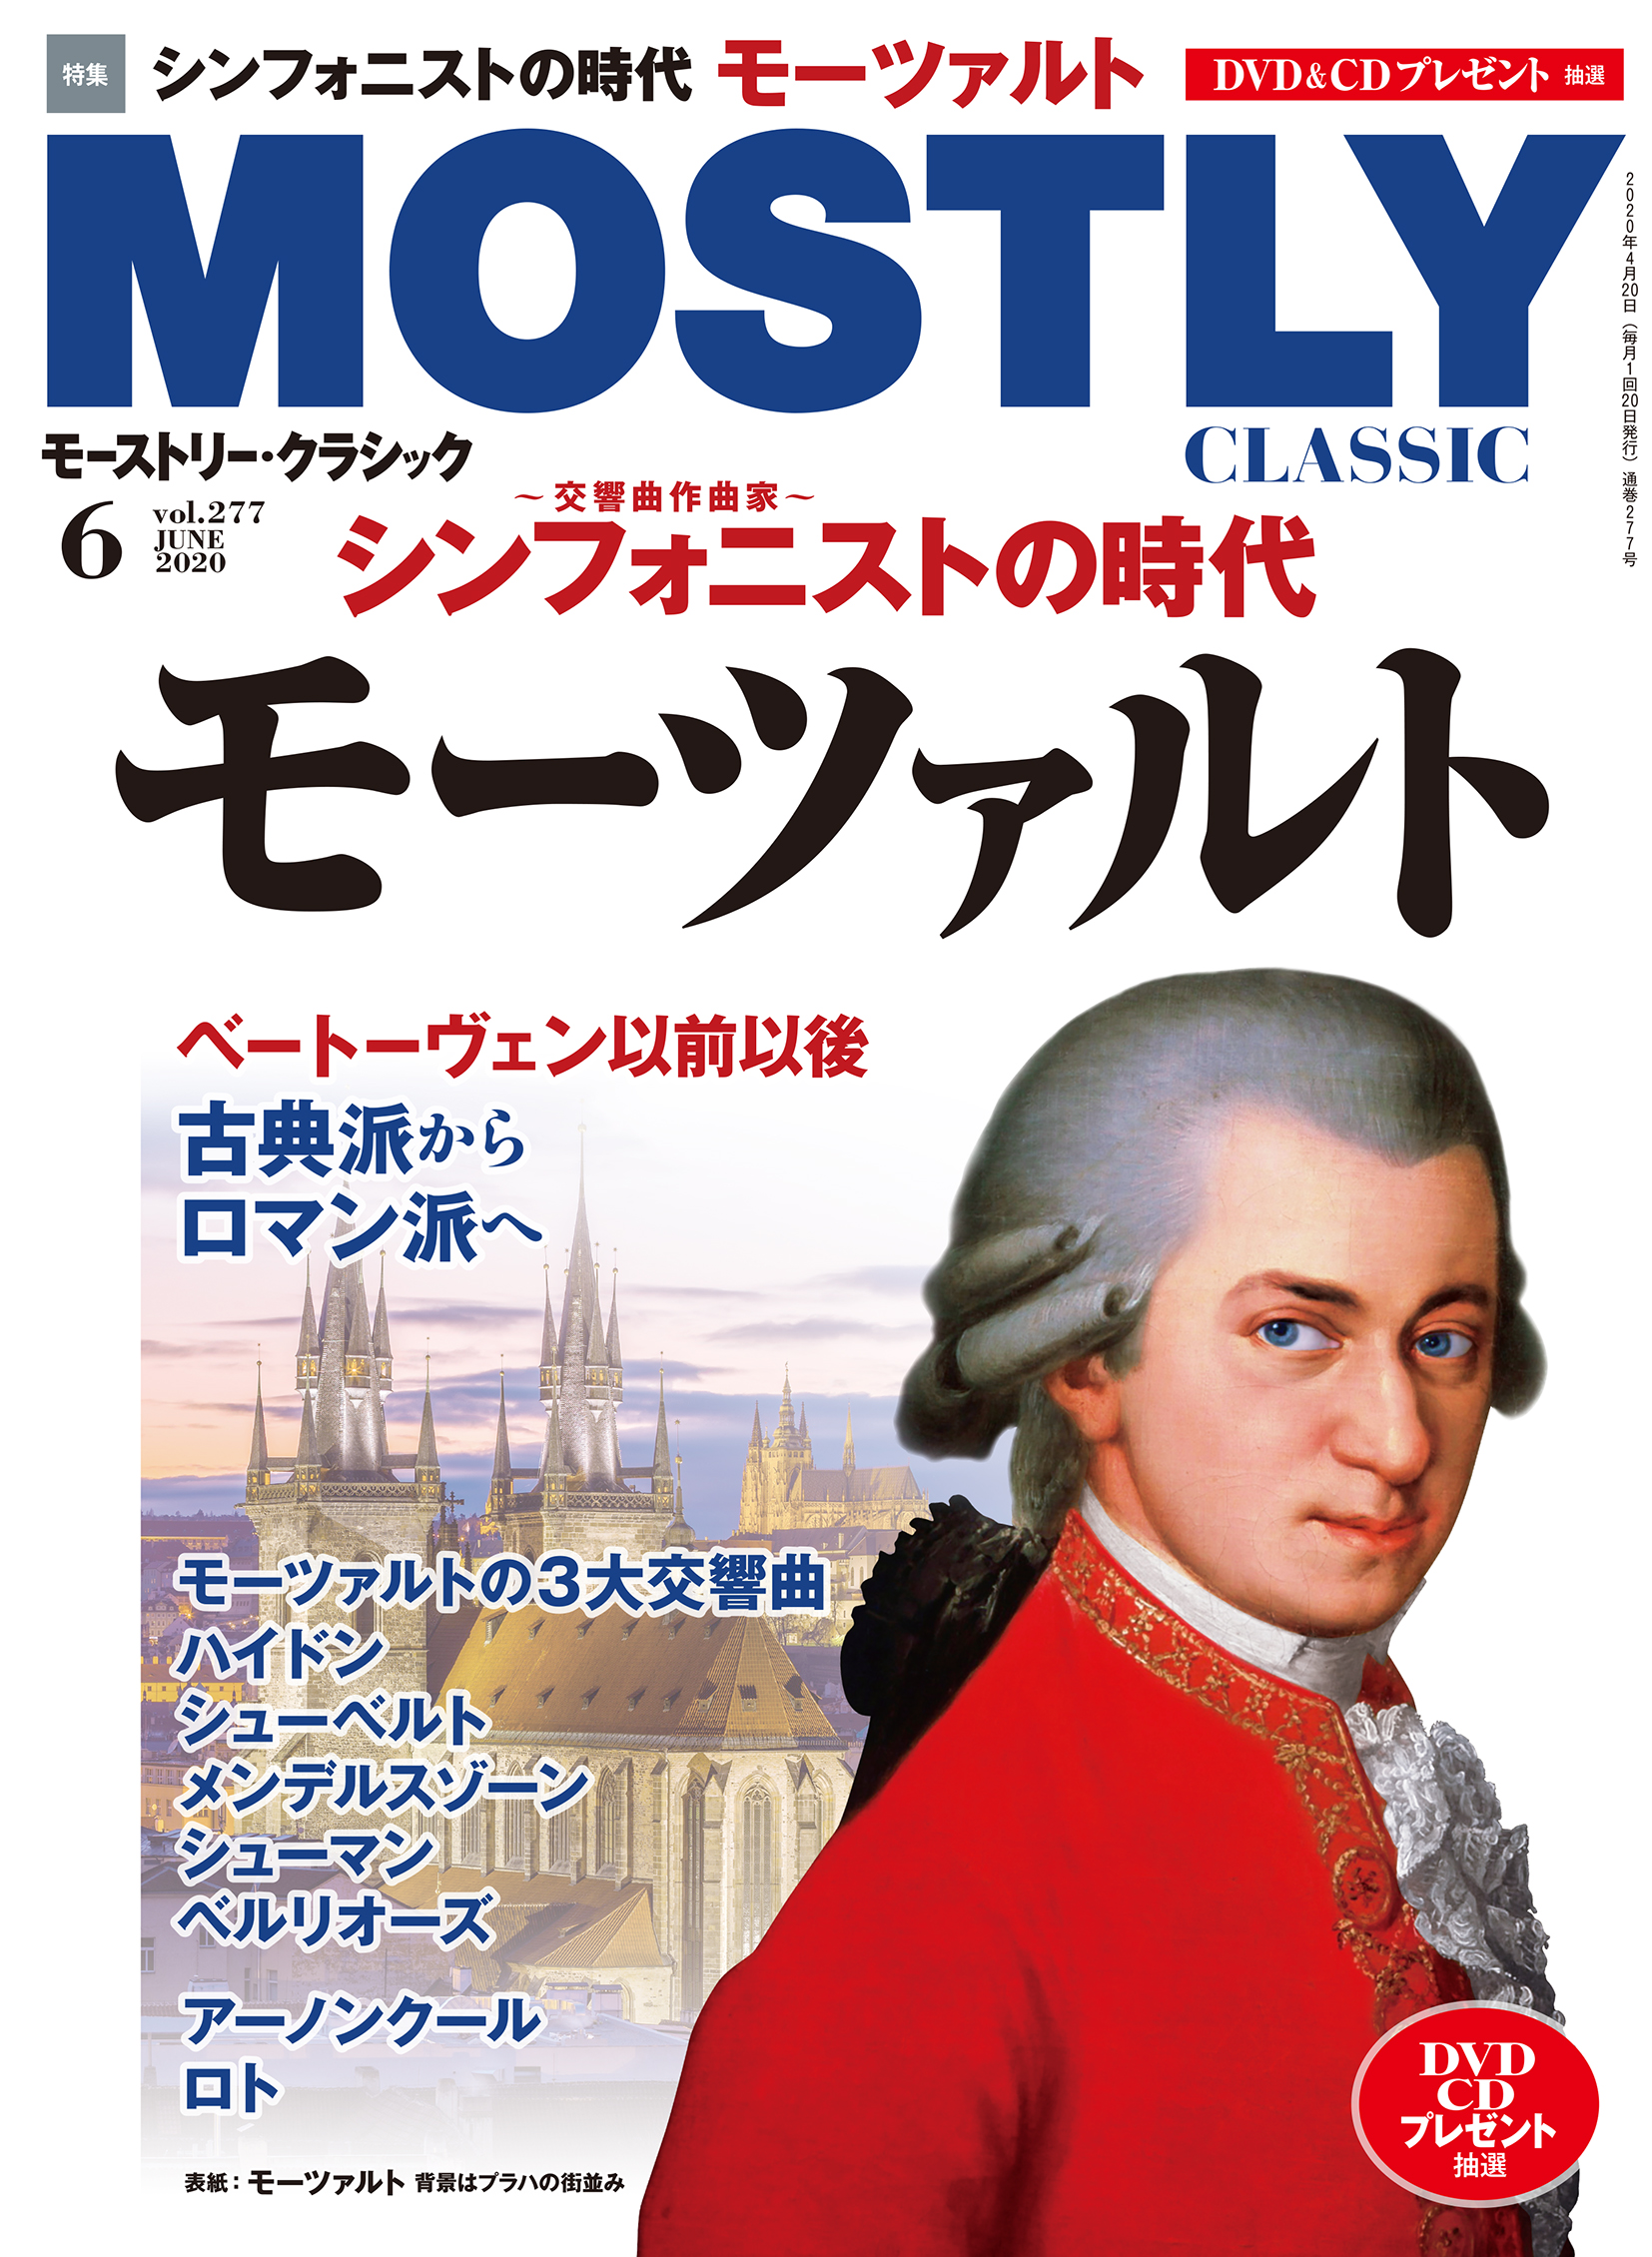 第一ネット クラシック 有名作曲家 名曲 モーツァルト バッハ 